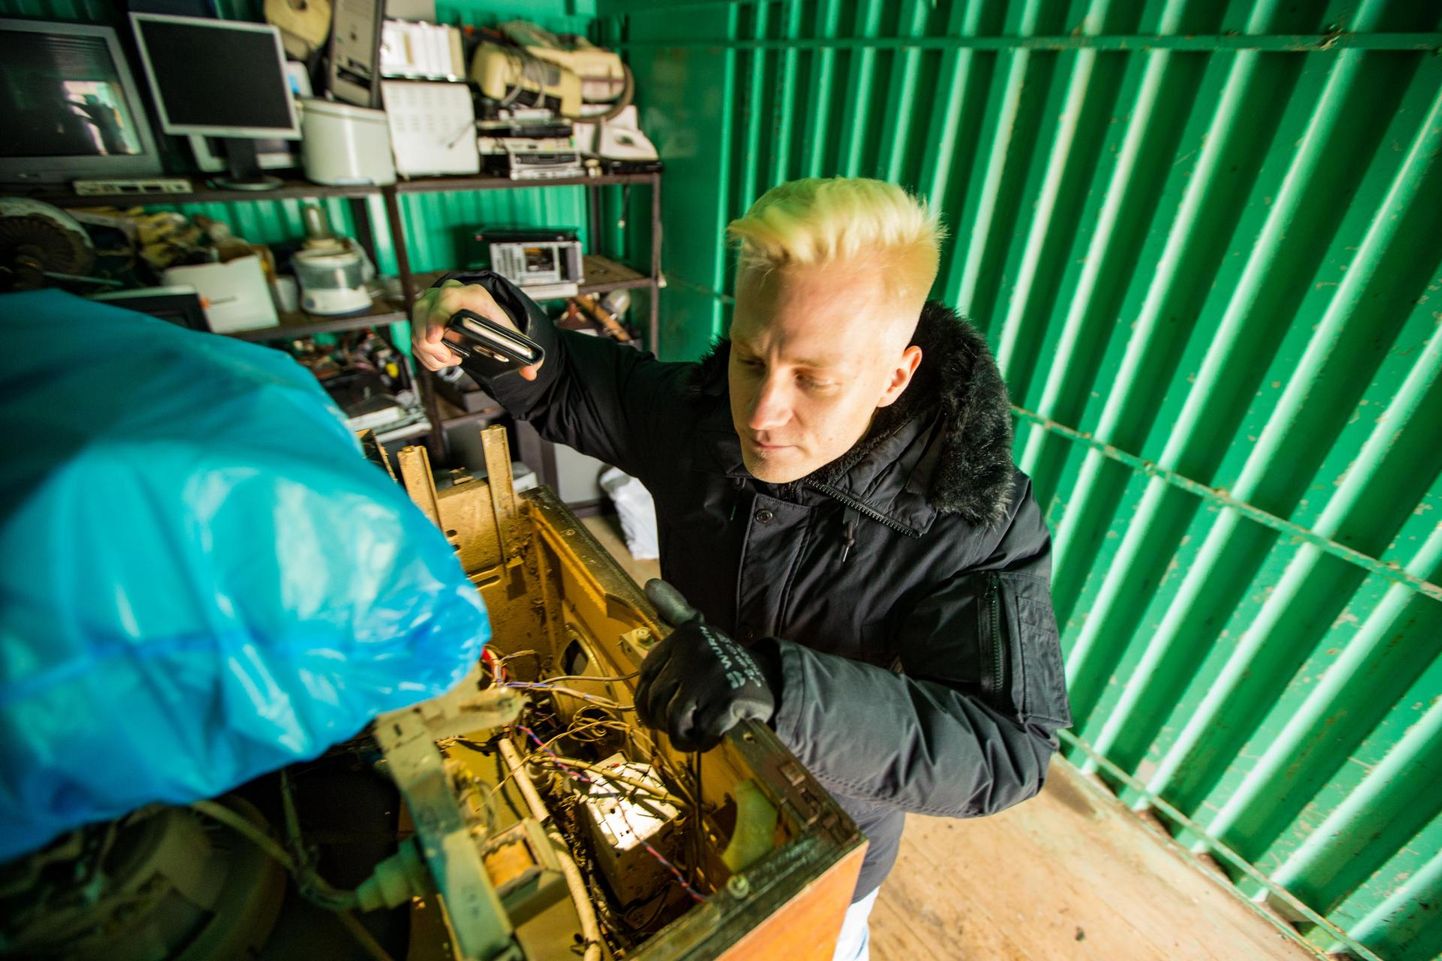 Eesti Keskkonnateenused AS sai endale Kunda jäätmejaama haldamise kohustuse. Viru-Nigula valla keskkonnaspetsialist Heiko Källo rääkis, et jäätmejaam hakkab olema avatud kolm päeva nädalas.